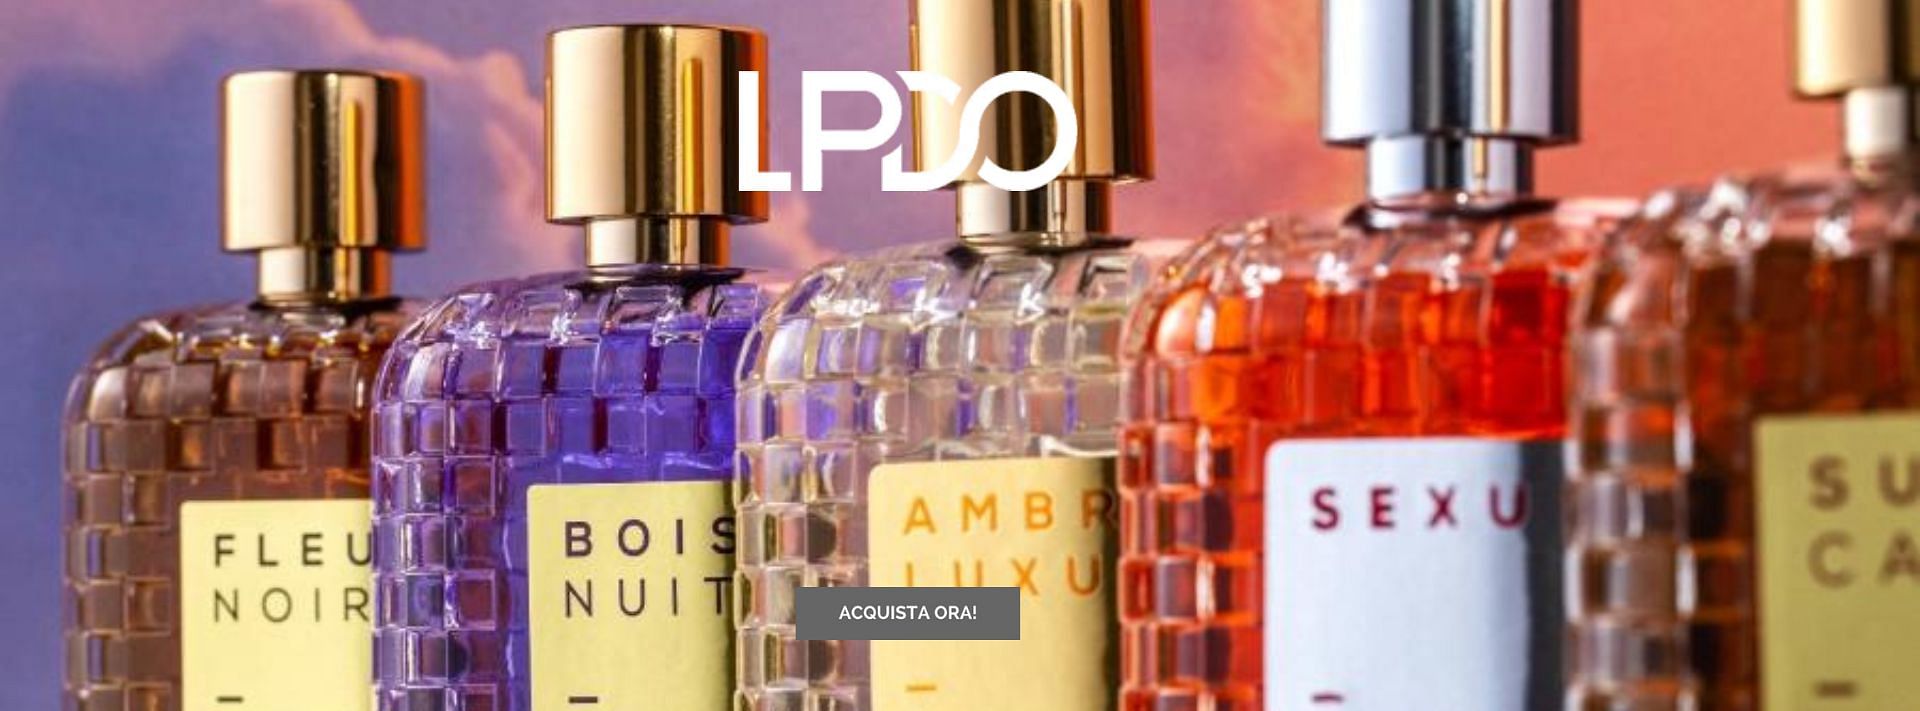 Esclusiva collezione di profumi LPDO, che mostra bottiglie dal design raffinato riempite di profumi unici e affascinanti